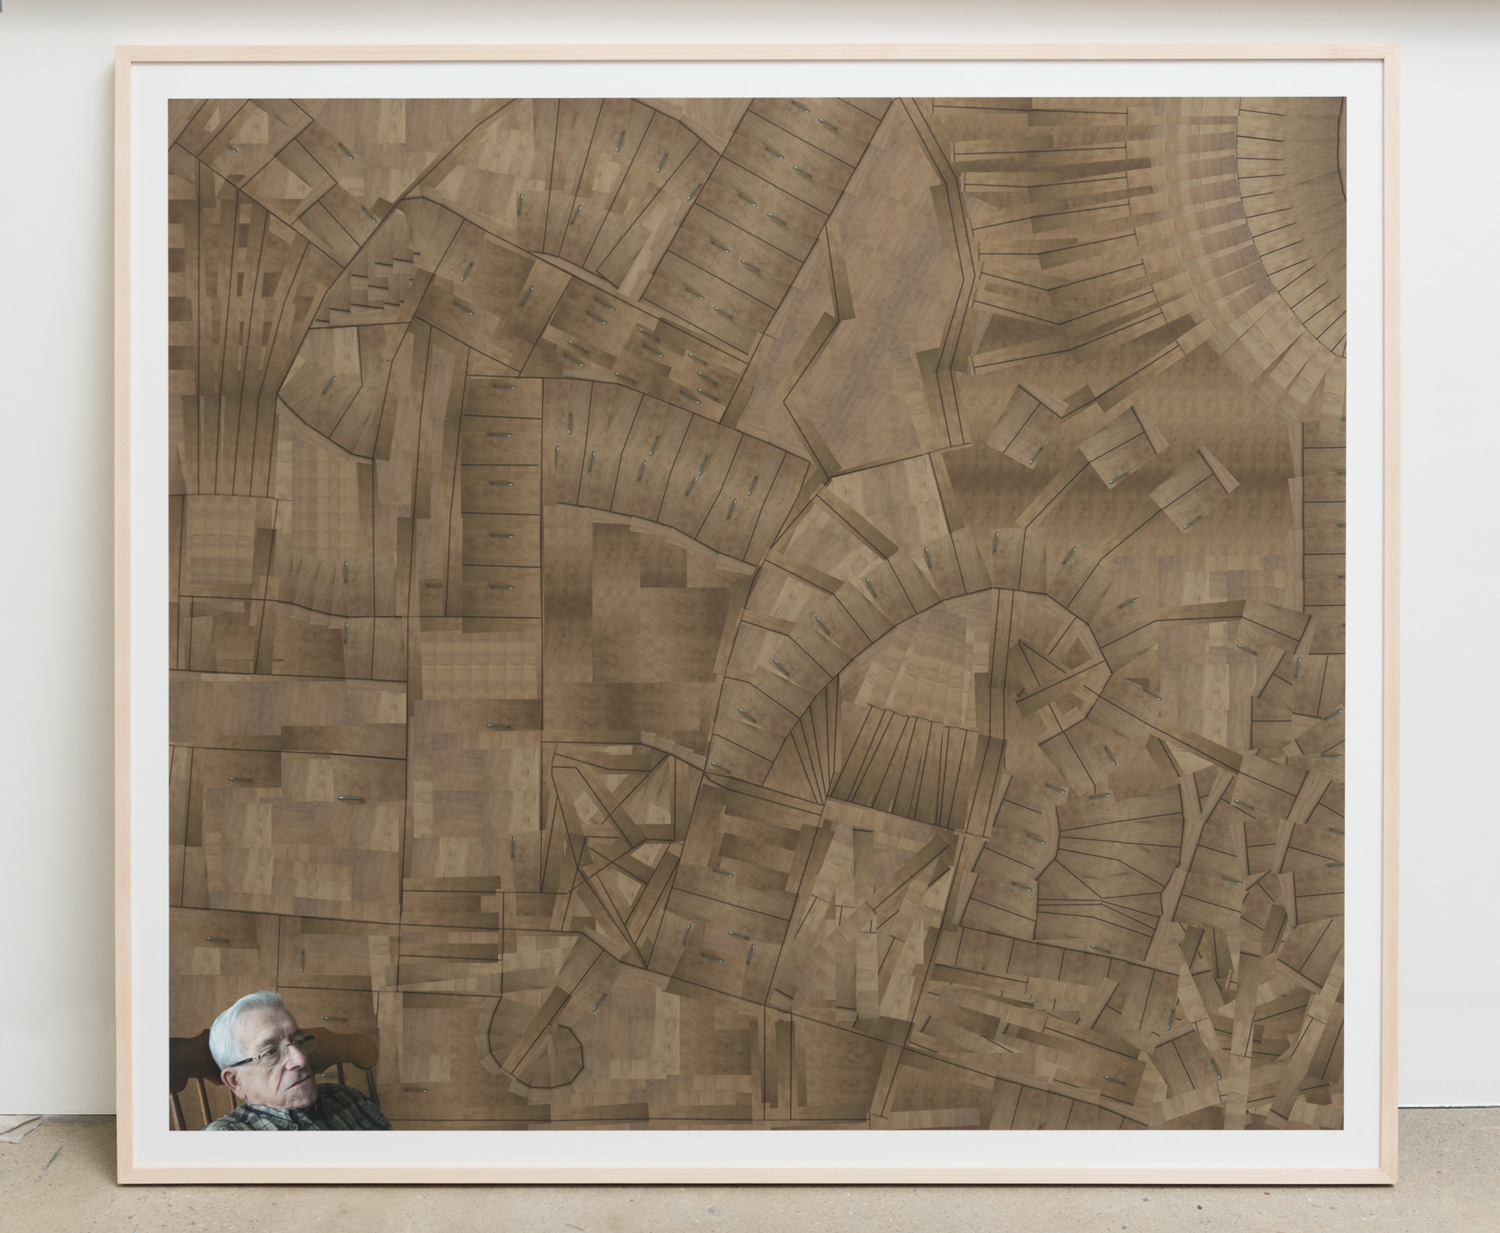 Image numérique d'un labyrinthe créé à partir de petits morceaux d'une armoire à l'arrière d'un homme Diane Dubeau La tête pleine de trous